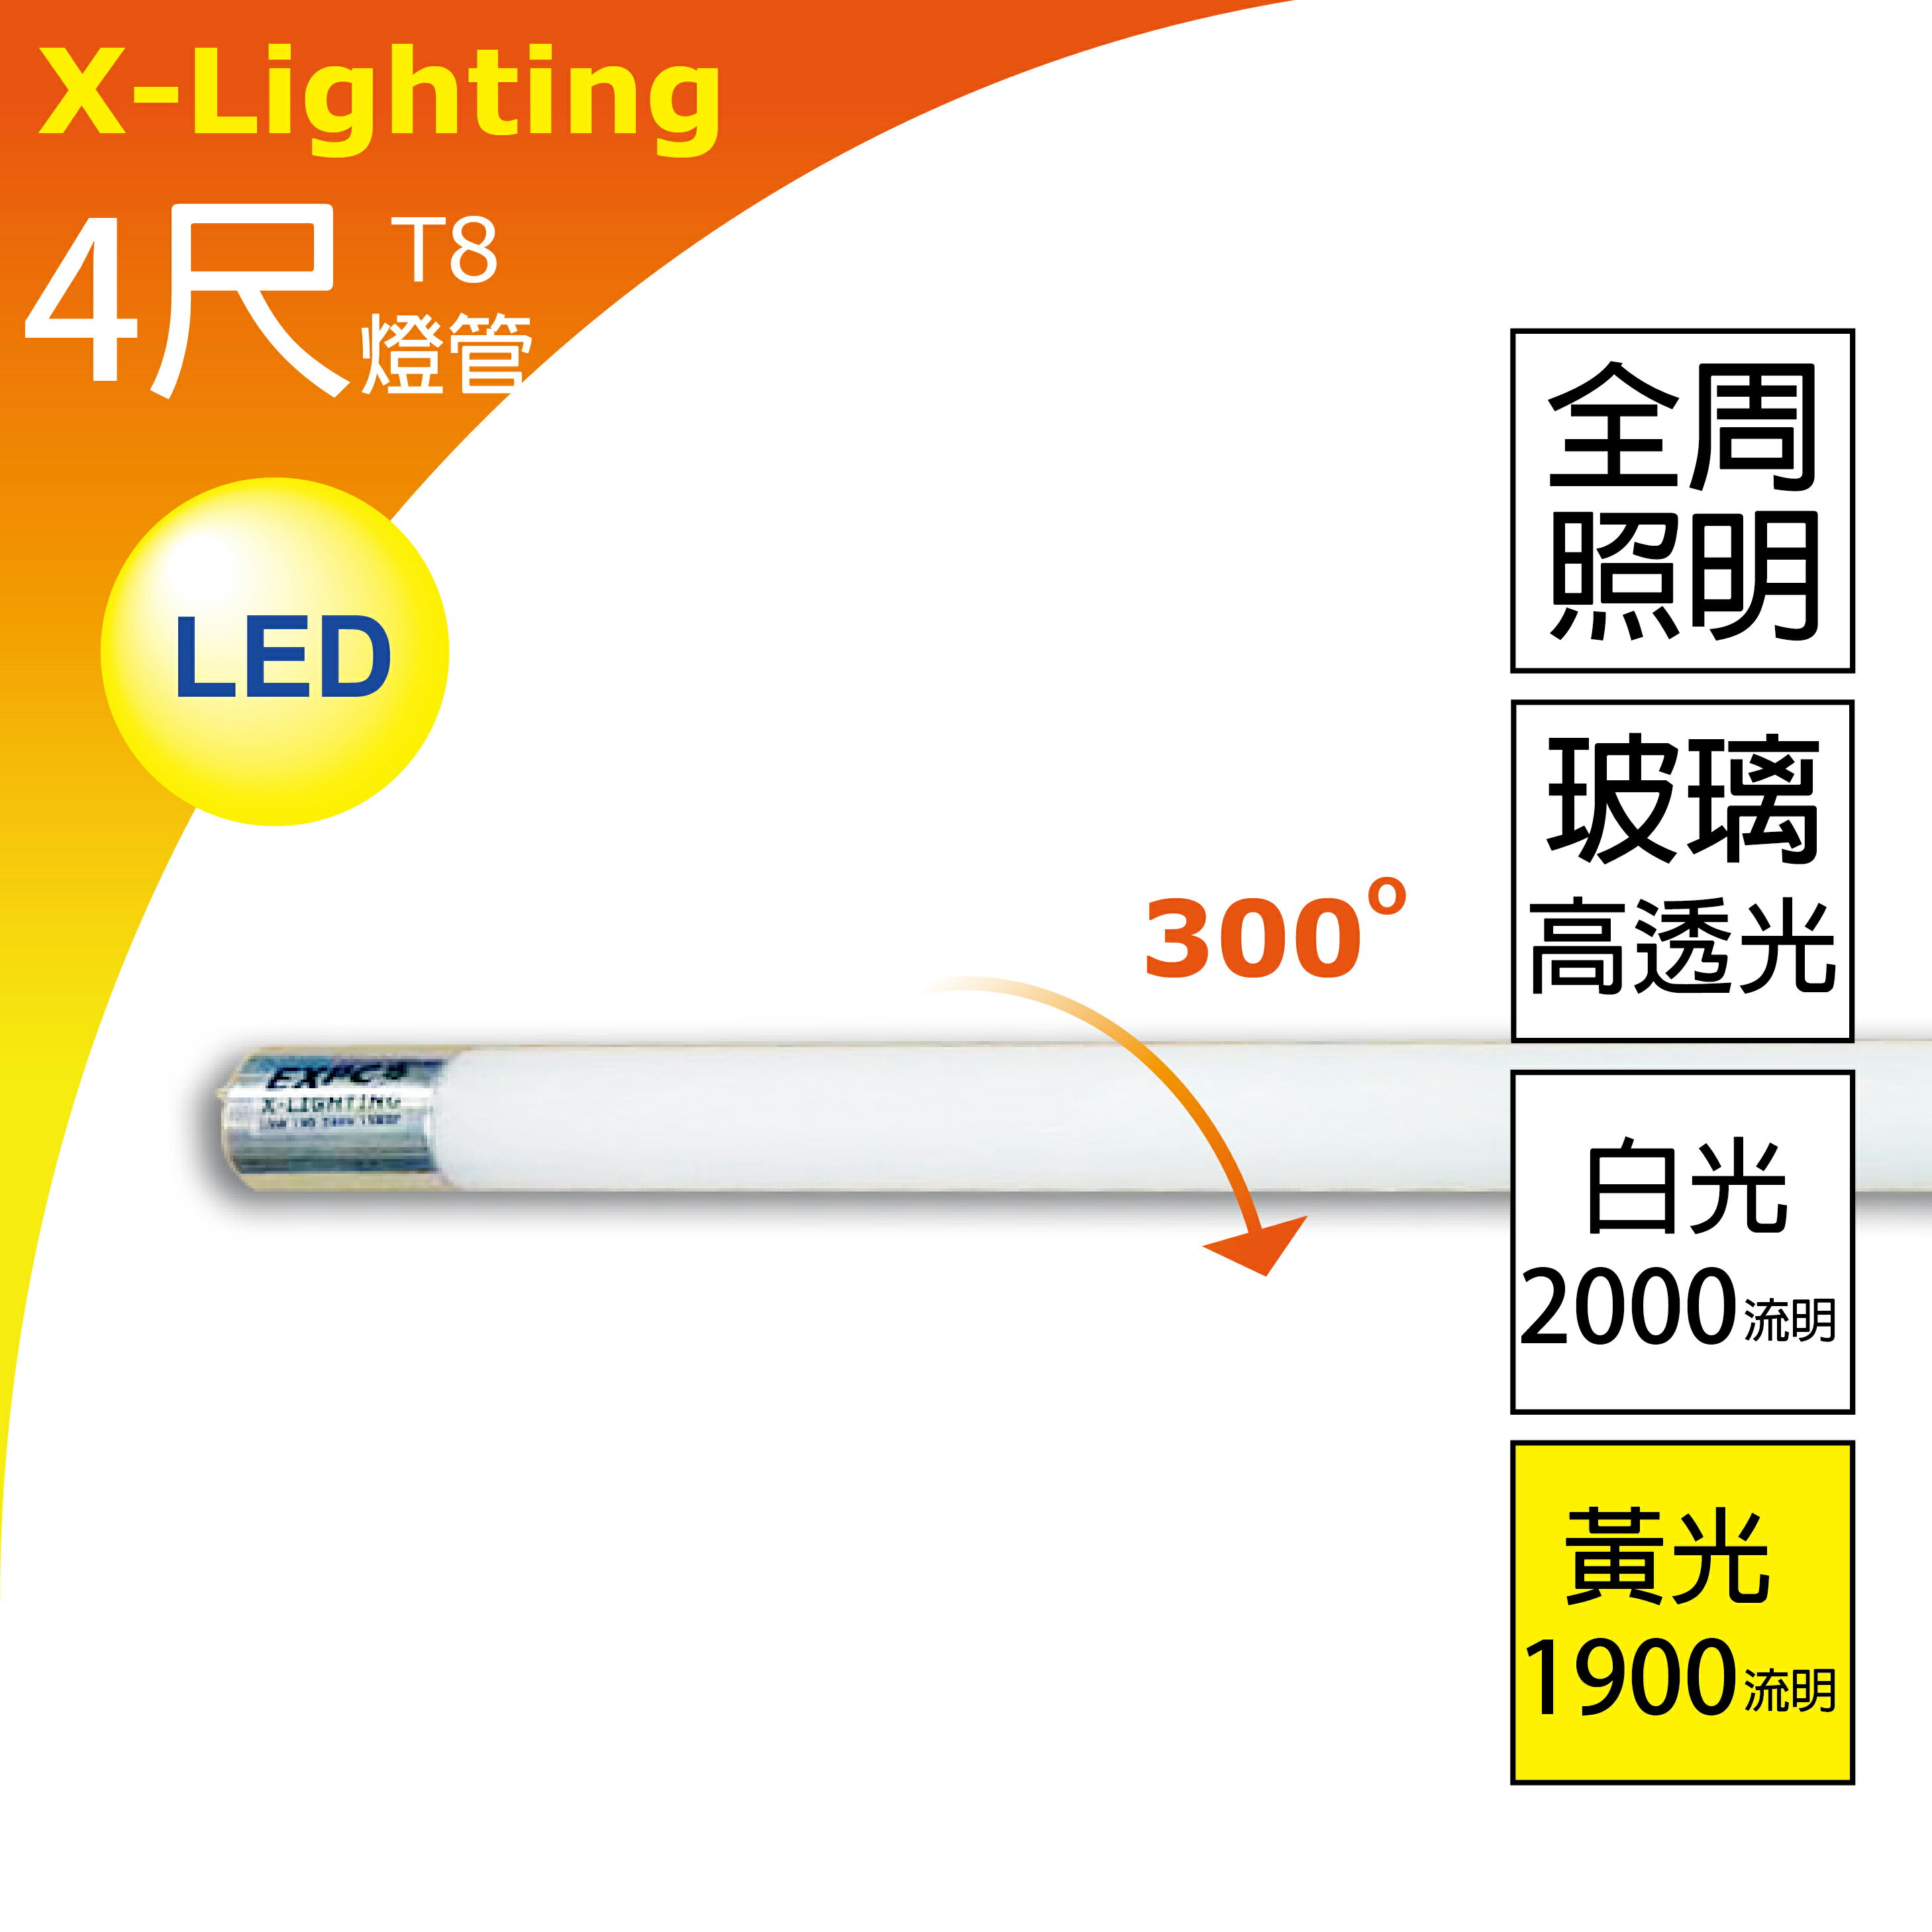 4尺 (白光) 燈管 玻璃高透 全周光 1年保固 LED T8 20W 2000流明 EXPC X-LIGHTING